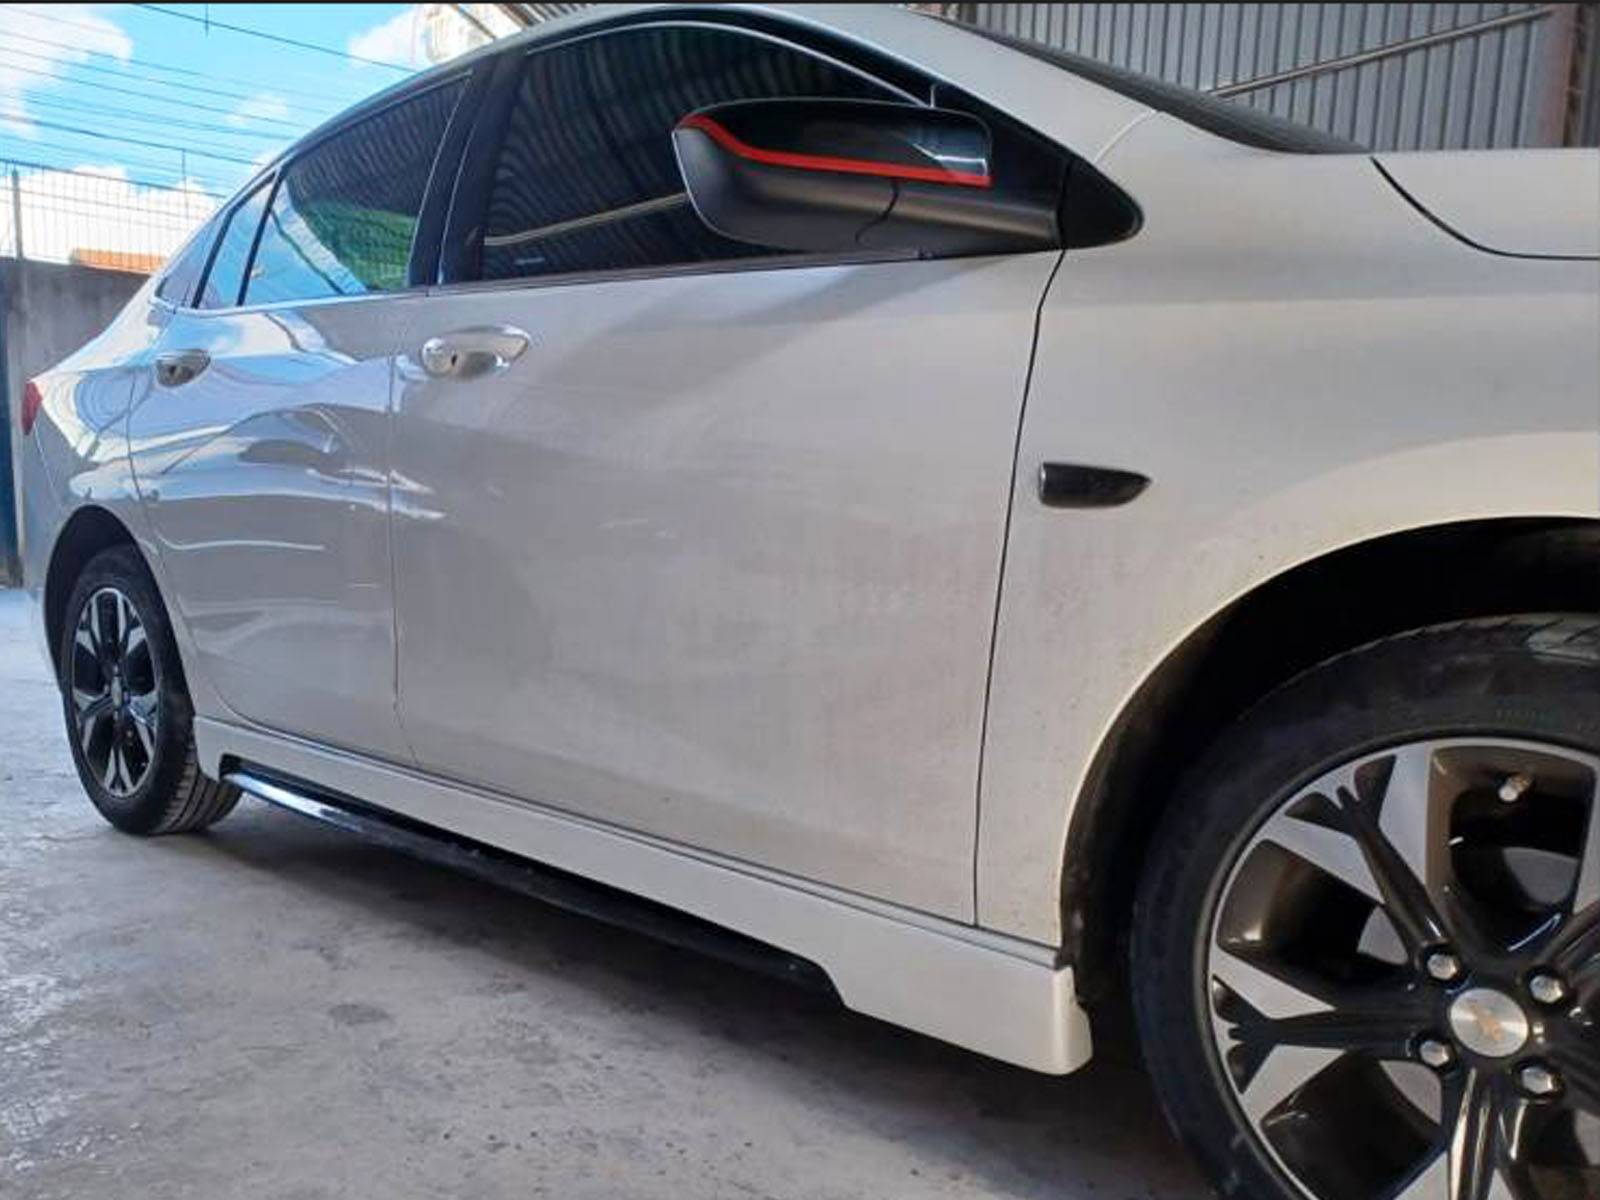 Novo Chevrolet Onix 2021 RS: fotos e detalhes oficiais - Preço oficial - R$  75.590